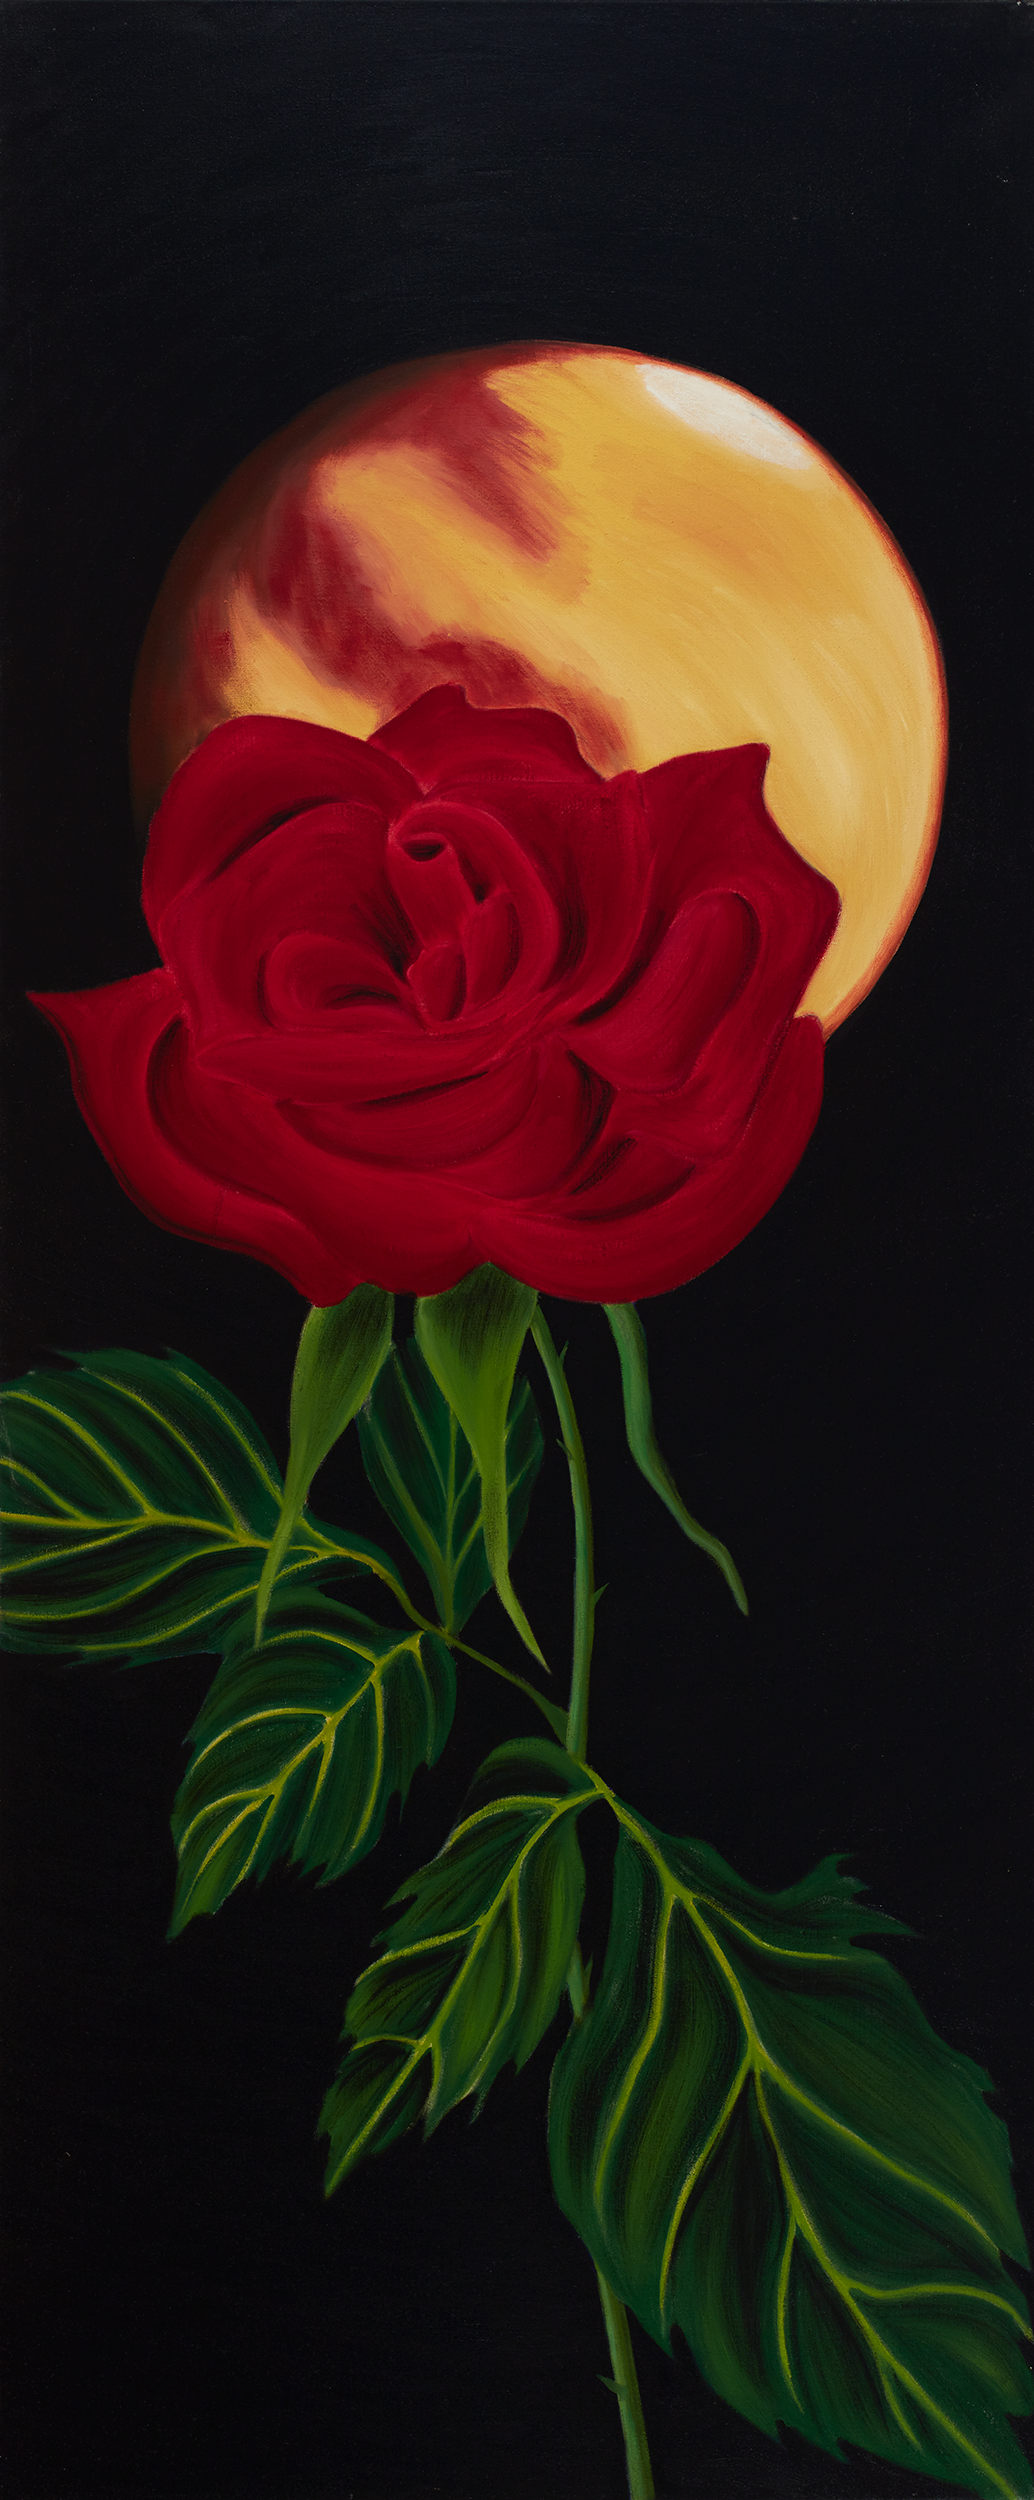   Red Rose/Mars . 1989 Oil on linen 66” x 28” 